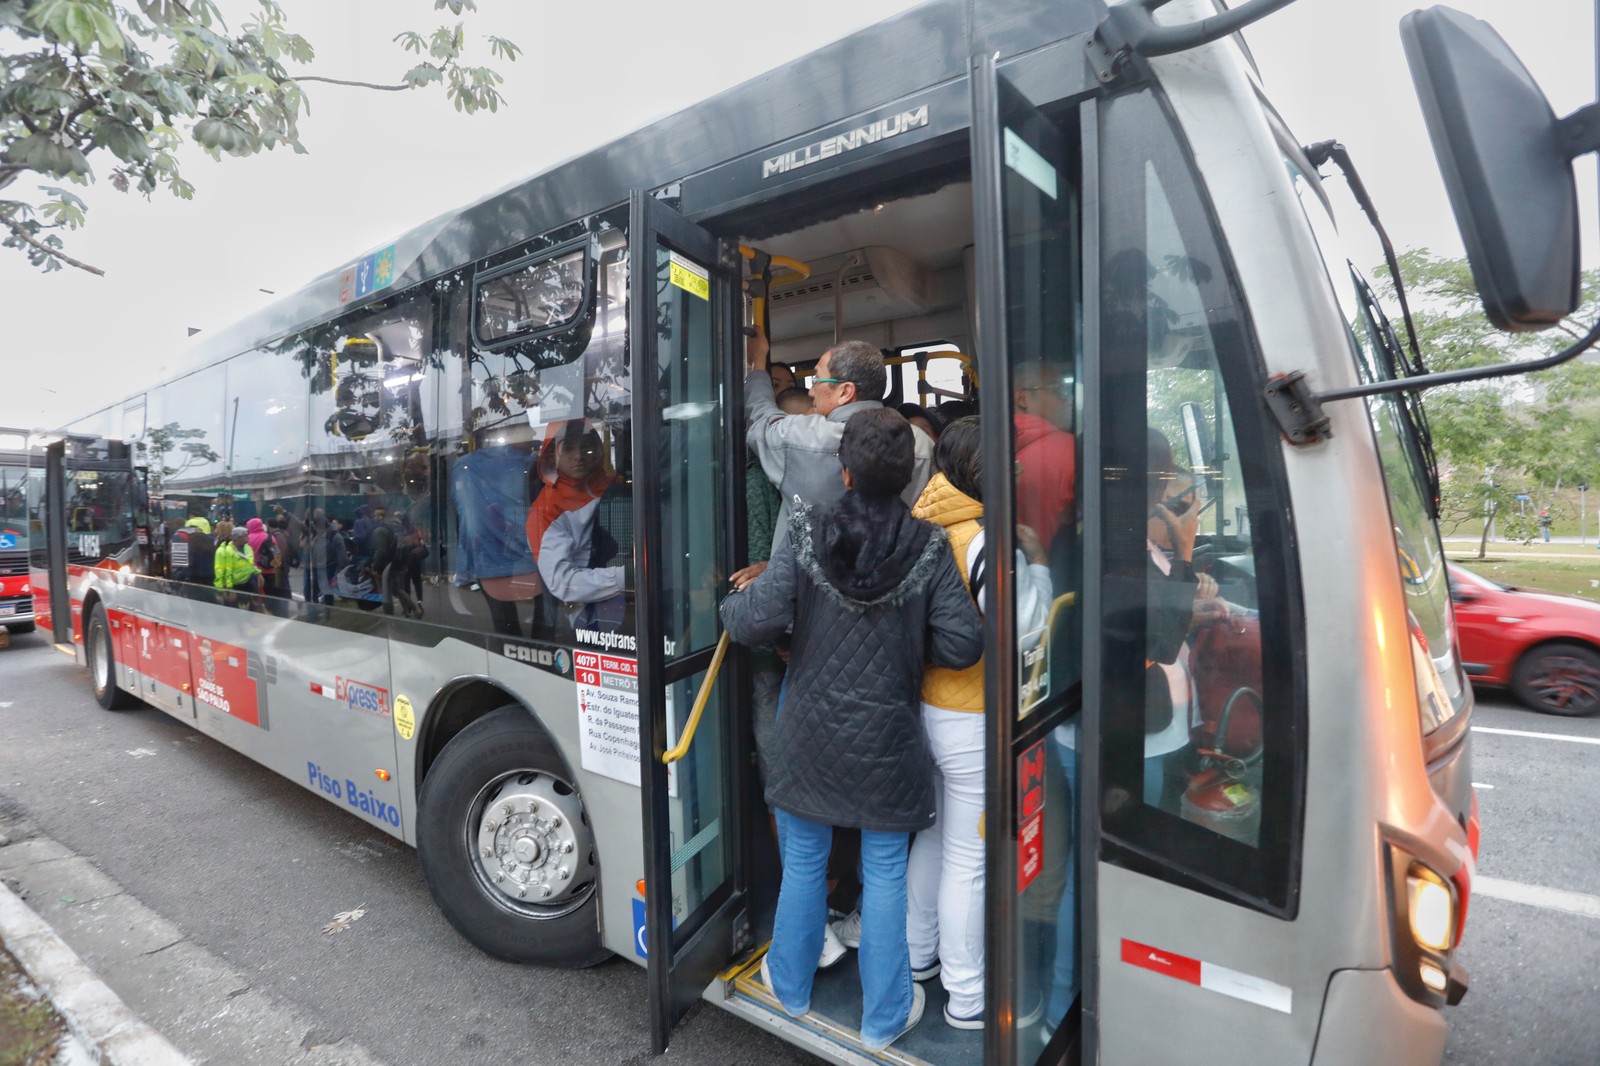 Governo de SP determinou ponto facultativo em todos os serviços públicos. Passeiros disputam um espaço no ônibus cheio. Foto: Edilson Dantas / Agência O Globo